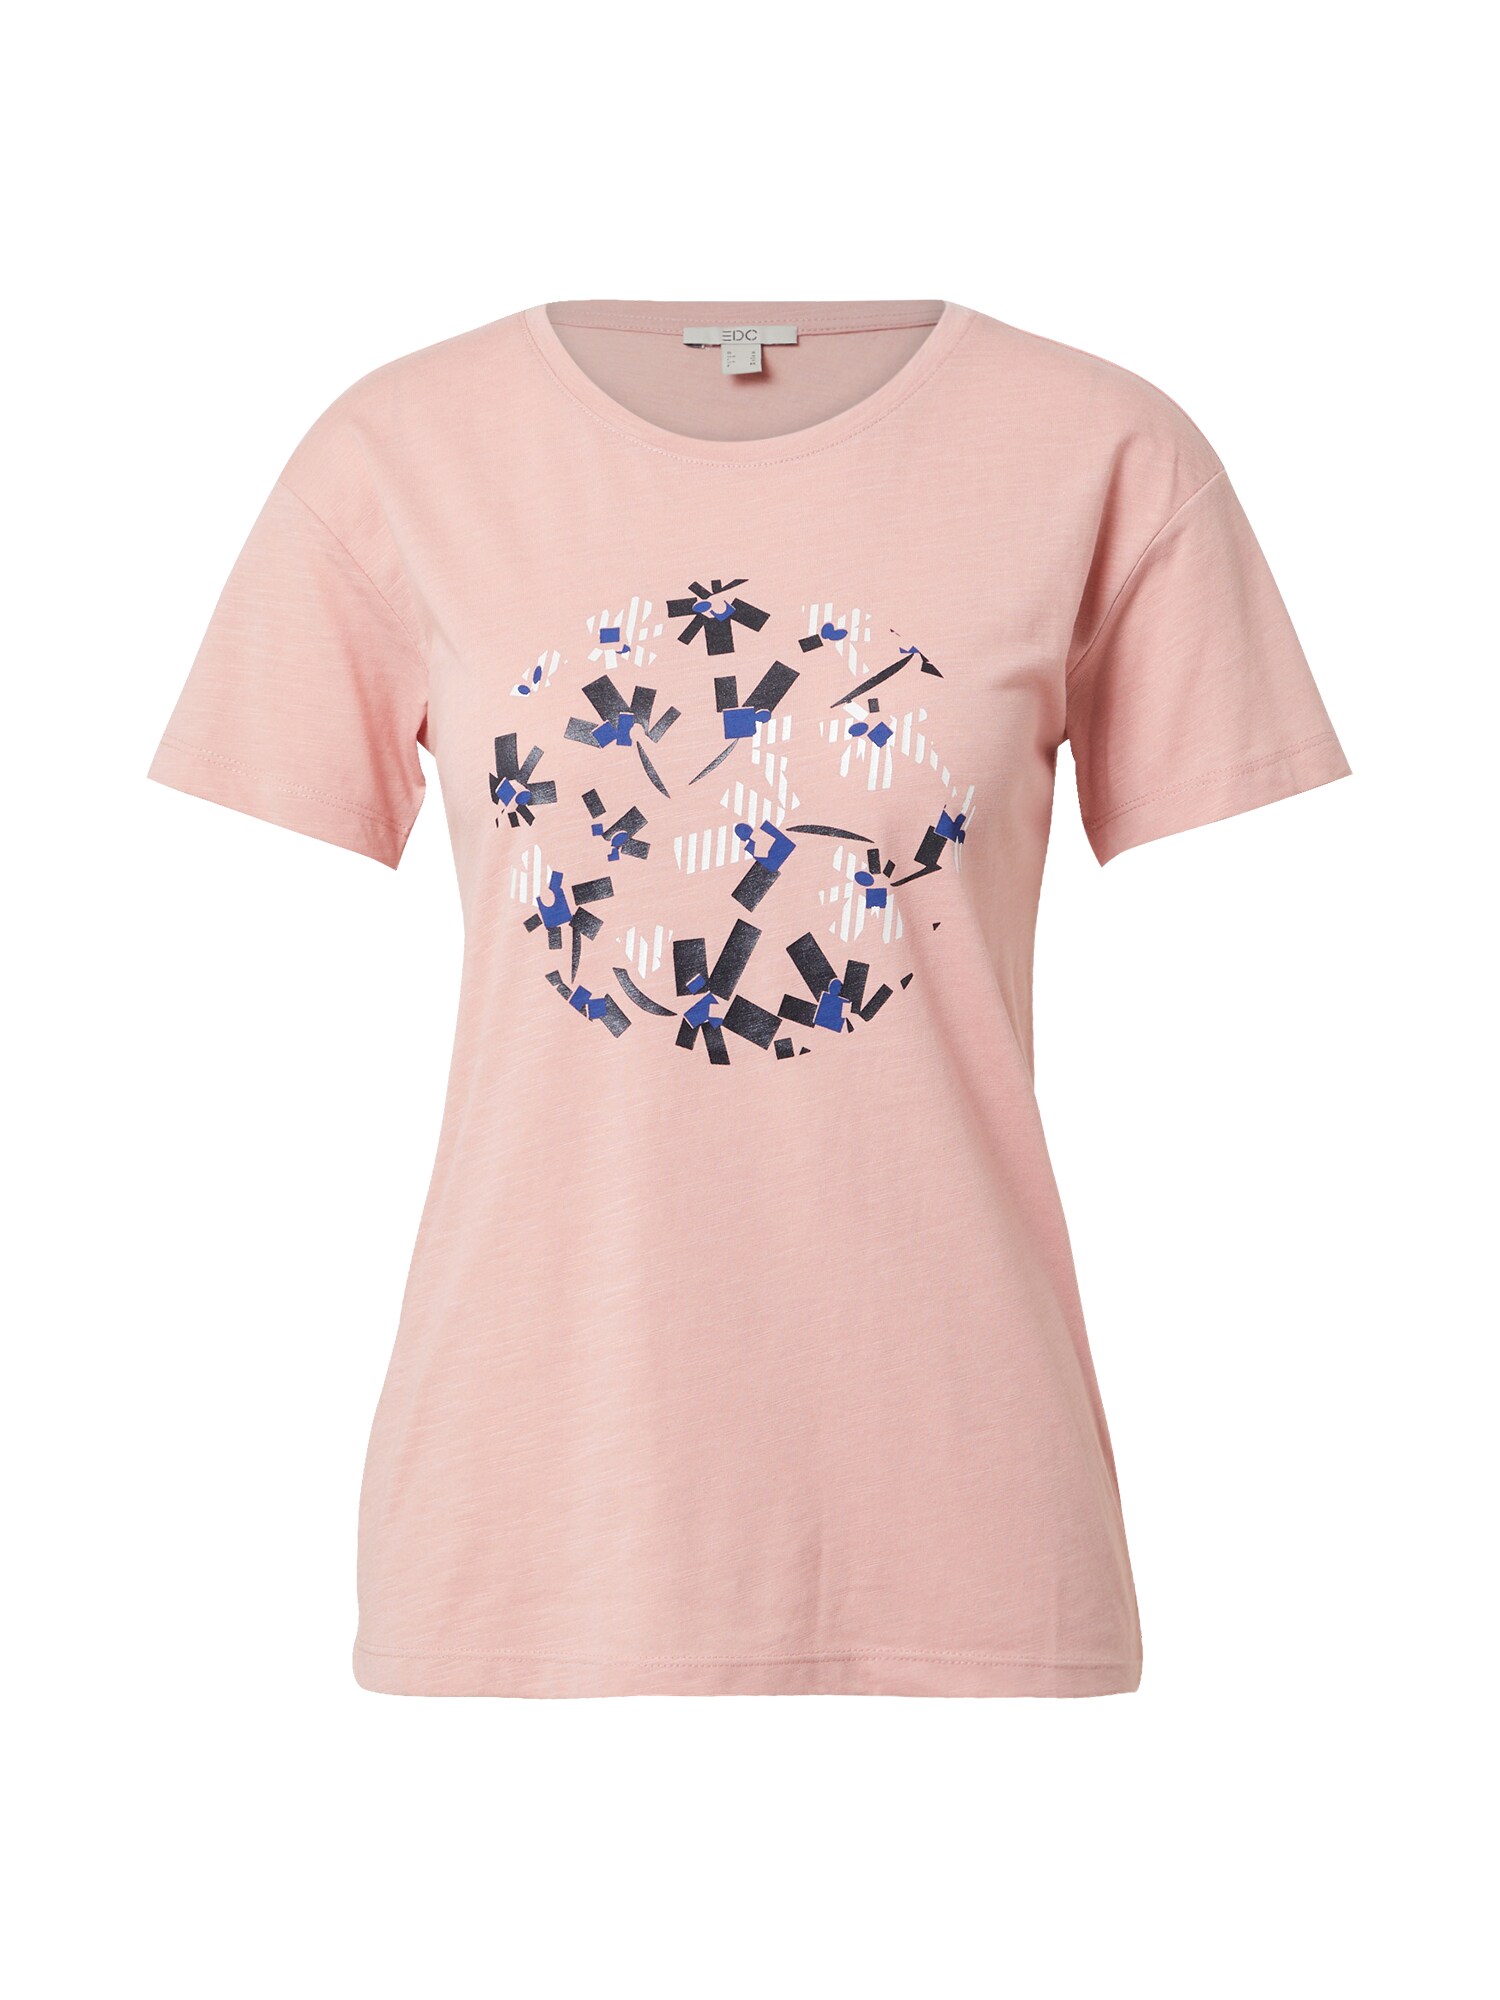 EDC BY ESPRIT Marškinėliai  rožinė / mišrios spalvos